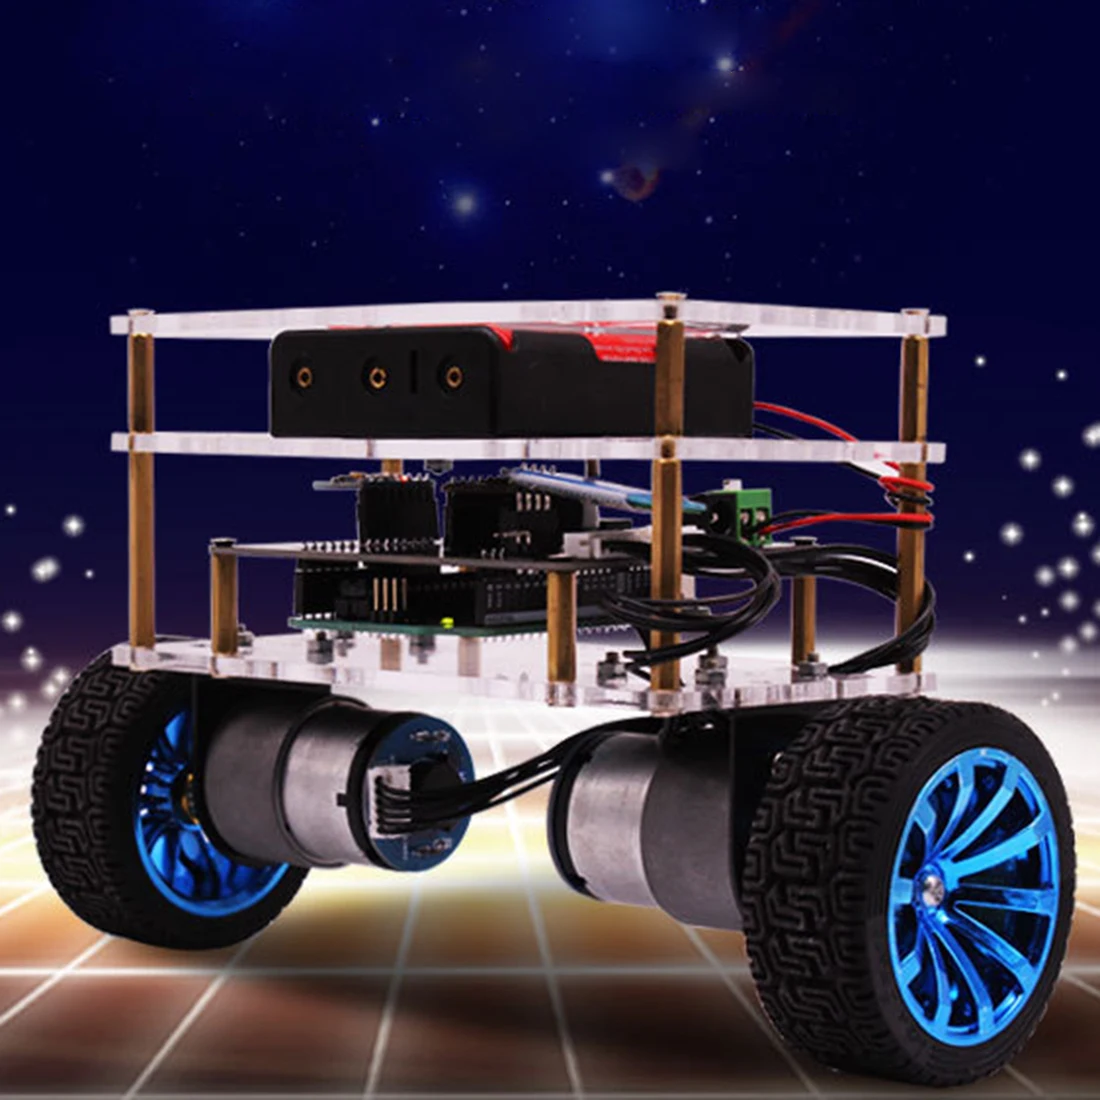 2019 новый робот балансировщик автомобиль совместимый для Arduino электроники программируемый High Tech робототехники поддержка C язык для детей и